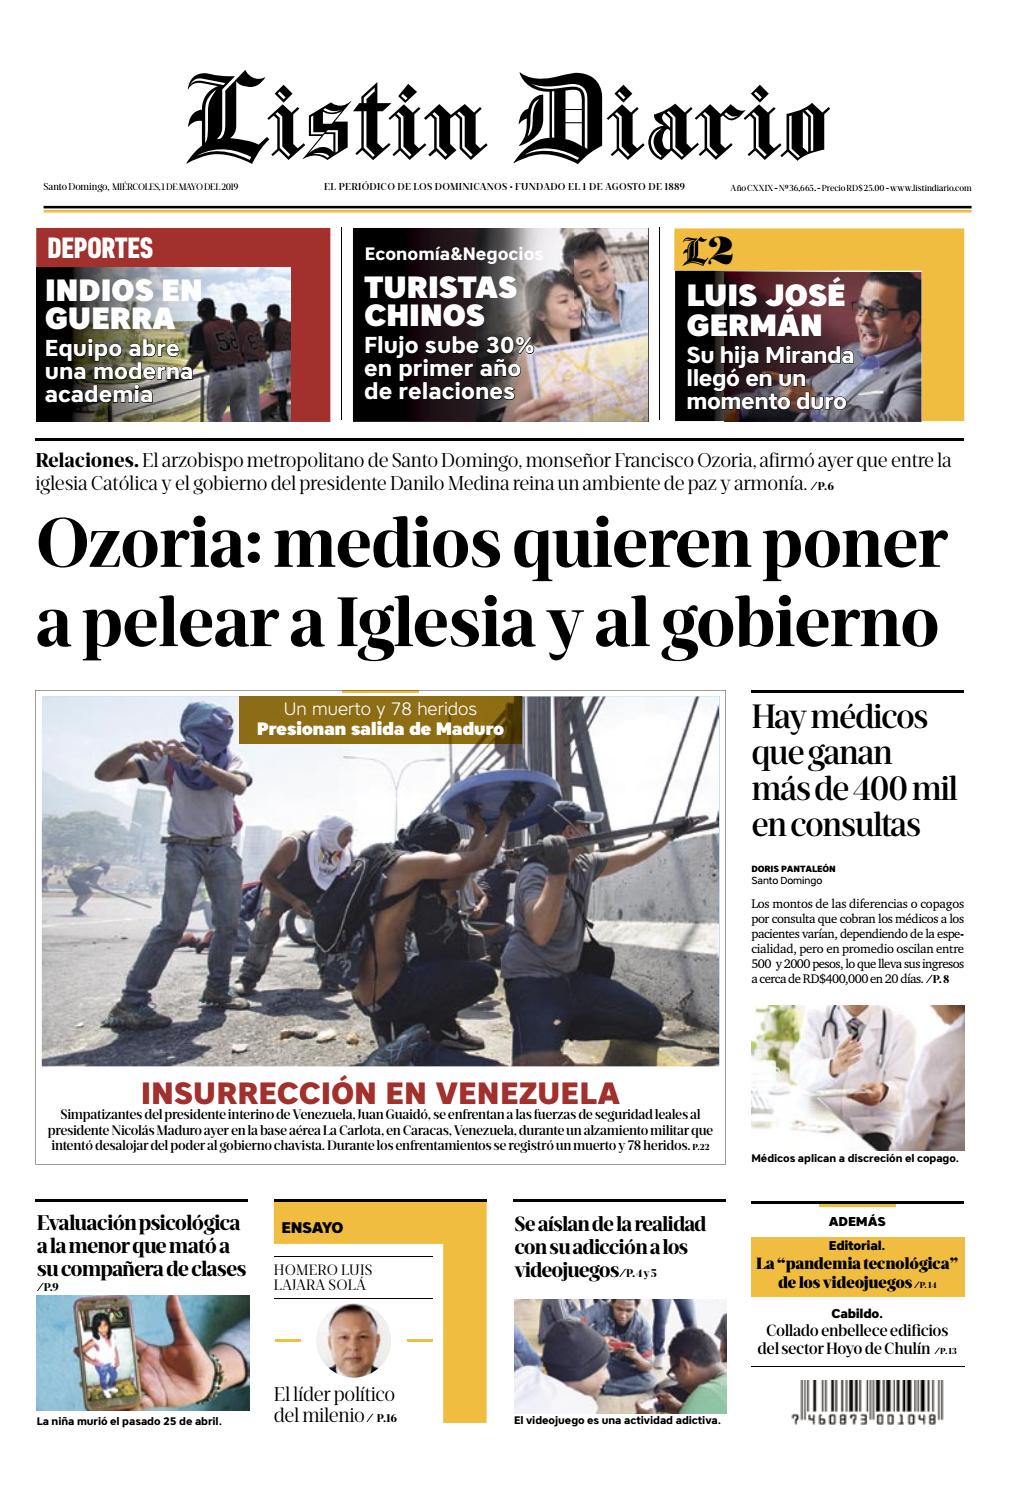 Portada Periódico Listín Diario, Miércoles 01 Mayo 2019